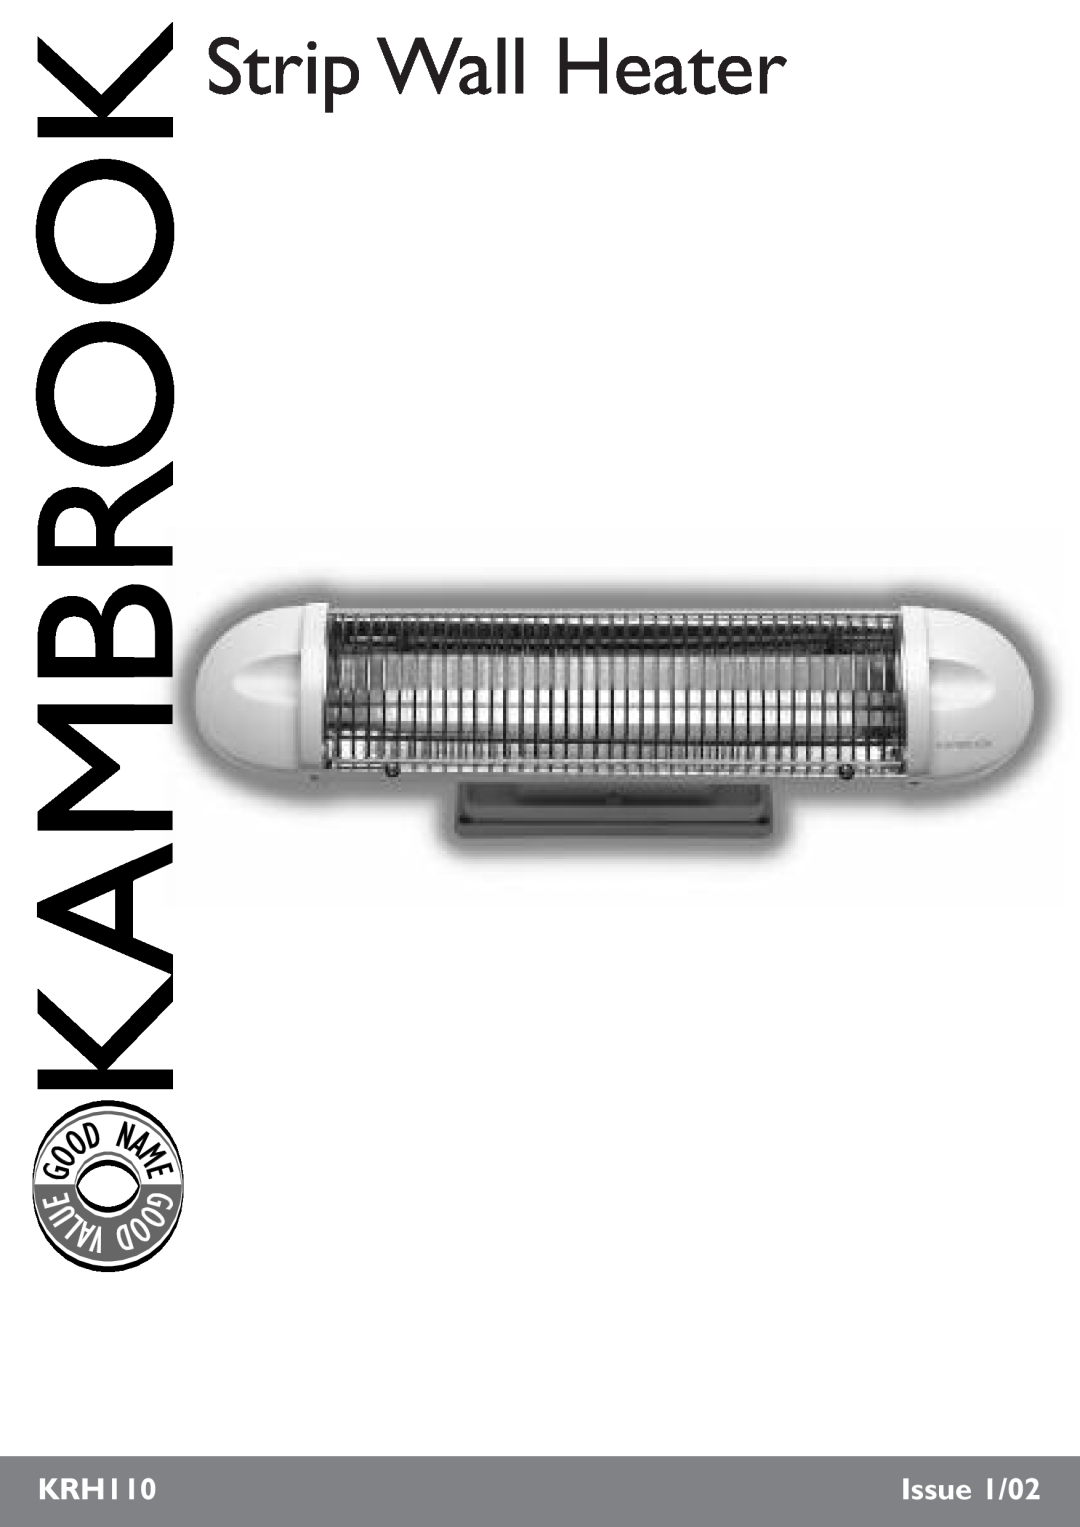 Kambrook KRH110 manual U Lav, Strip Wall Heater, Issue 1/02 